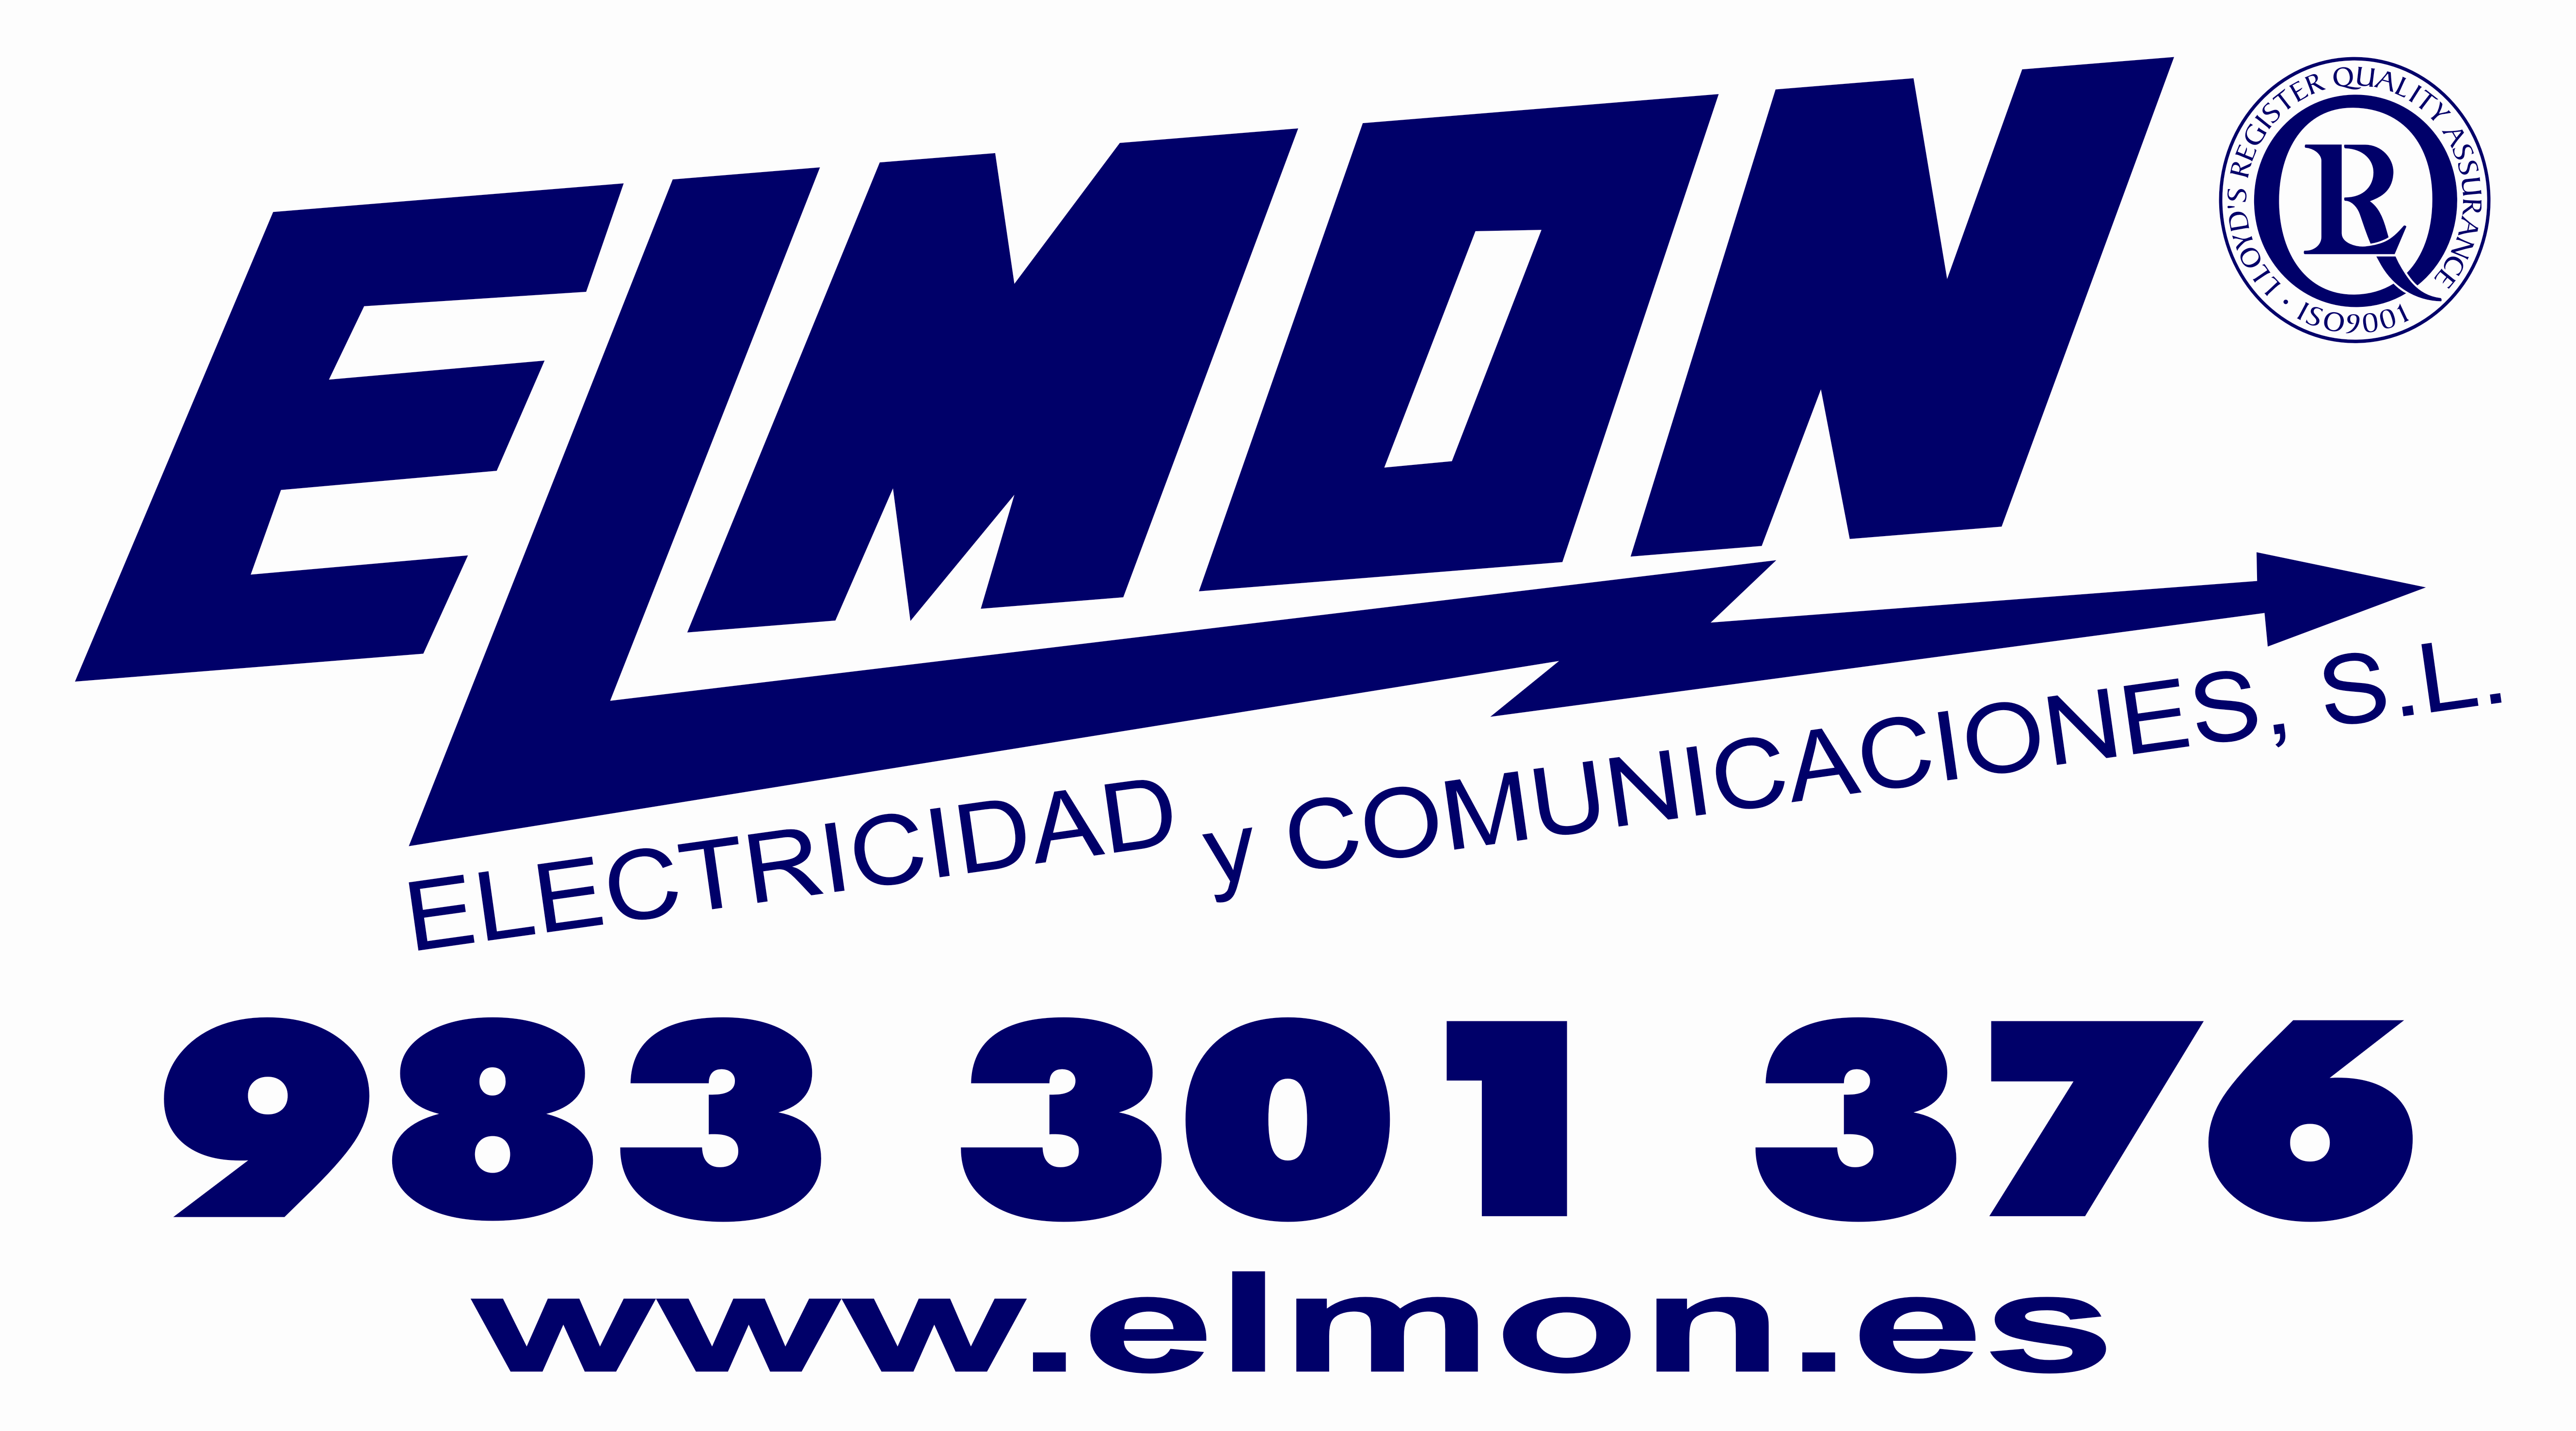 ELMON ELECTRICIDAD Y COMUNICACIONES, S.L.